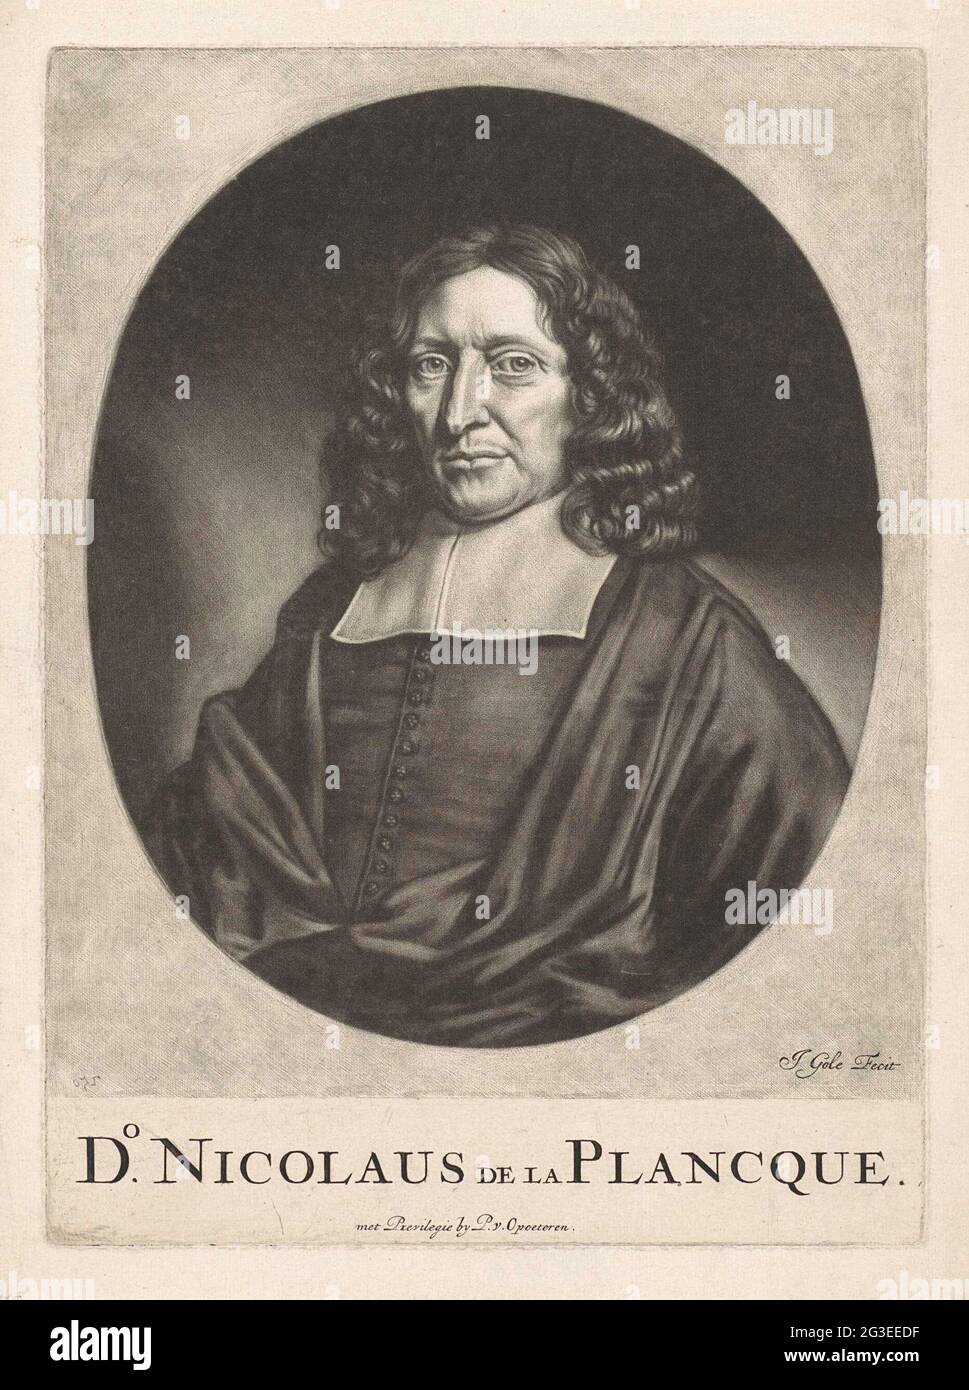 Portrait de Nicolaas de la Planque. Nicolaas de la Planque, pasteur à Amsterdam et dans d'autres villes. Banque D'Images